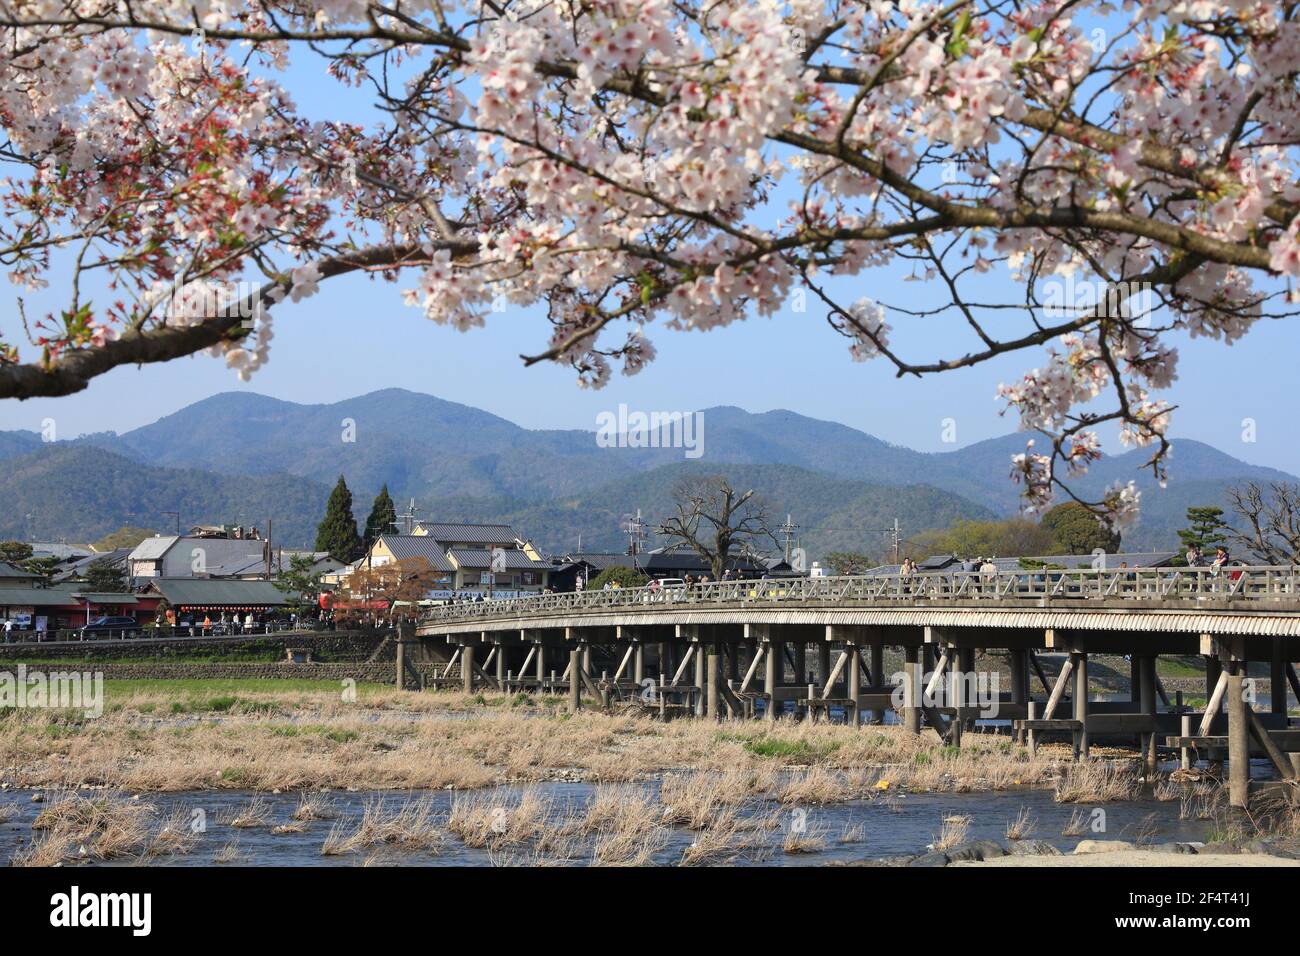 KYOTO, JAPON - 17 AVRIL 2012 : les gens visitent Arashiyama à Kyoto, Japon. Arashiyama est un lieu national désigné de beauté panoramique et site historique Banque D'Images